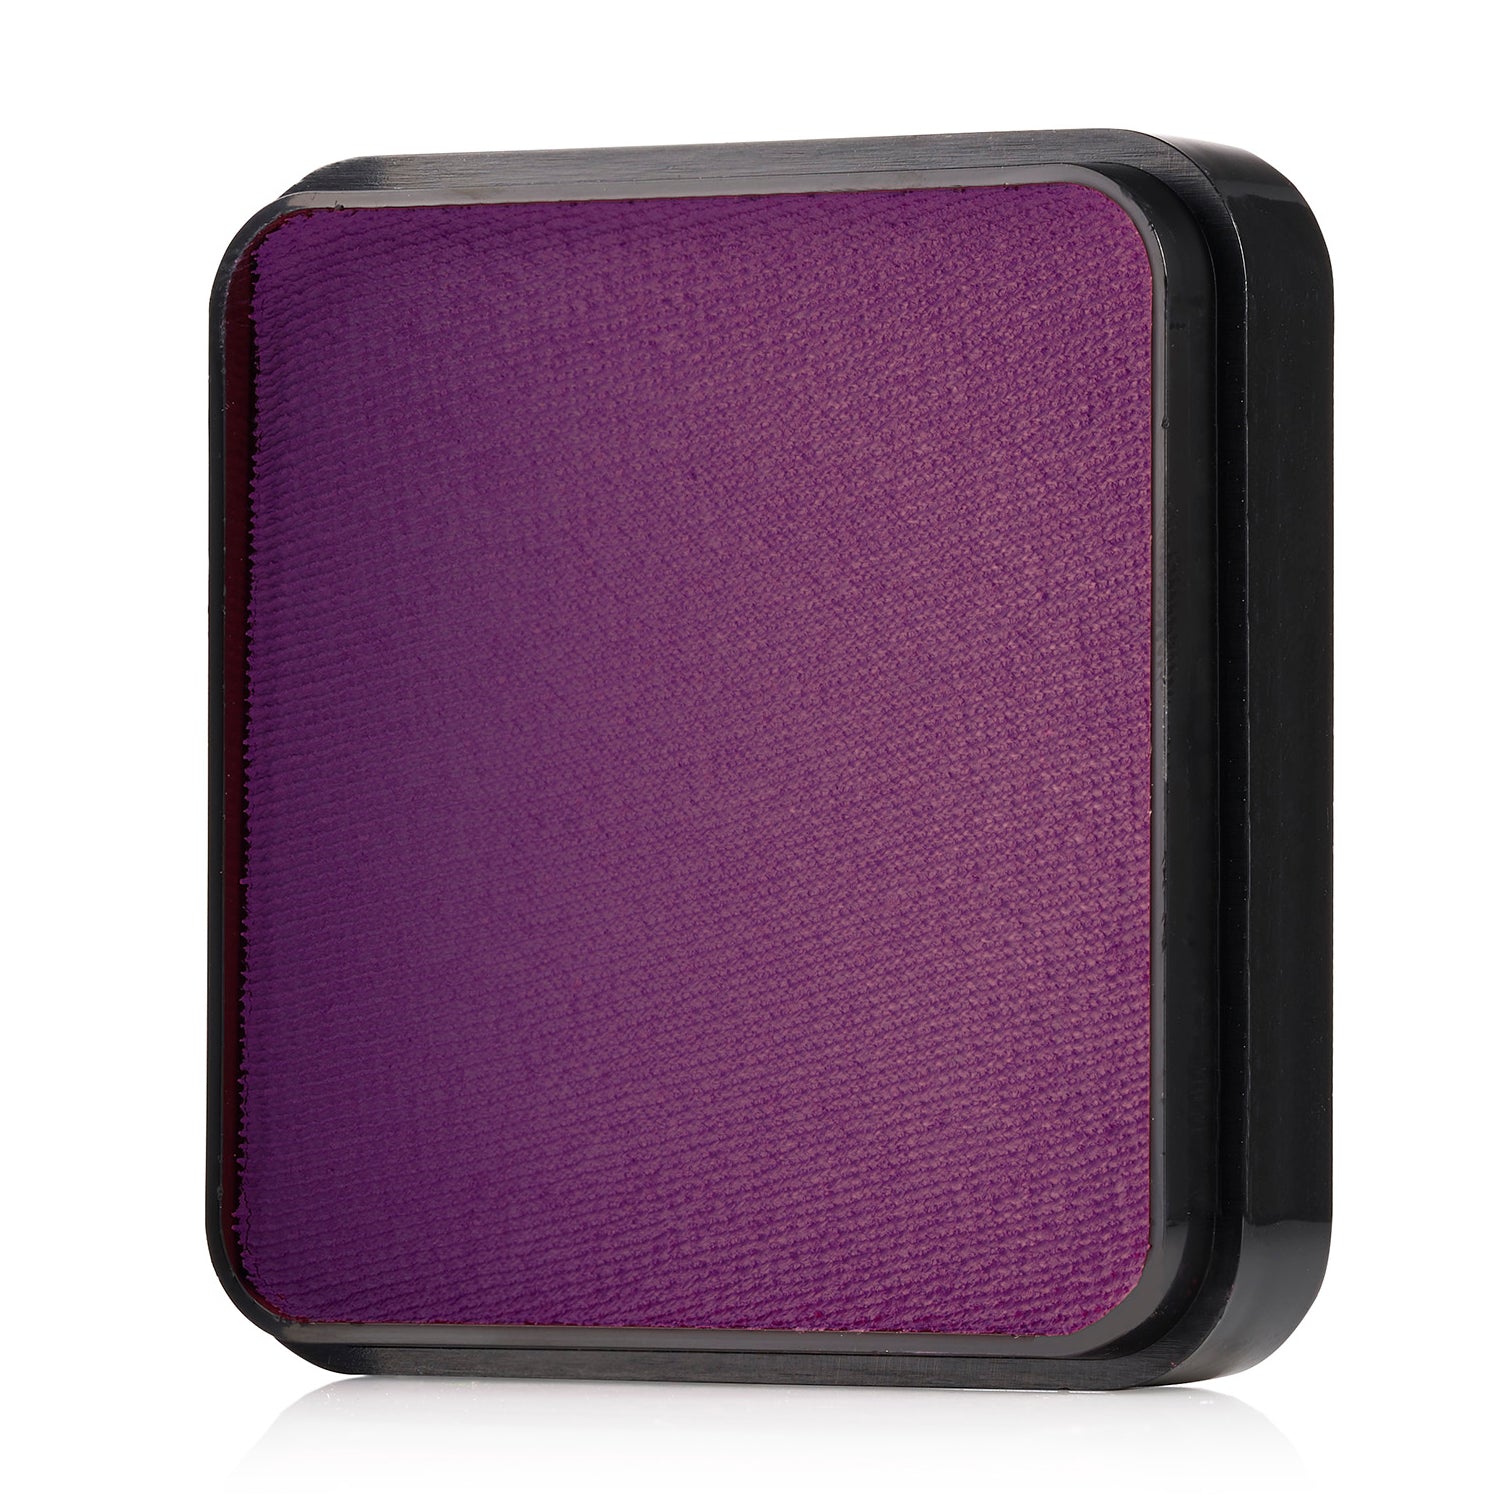 Kraze FX Face & Body Paint - Violet (25 gm)